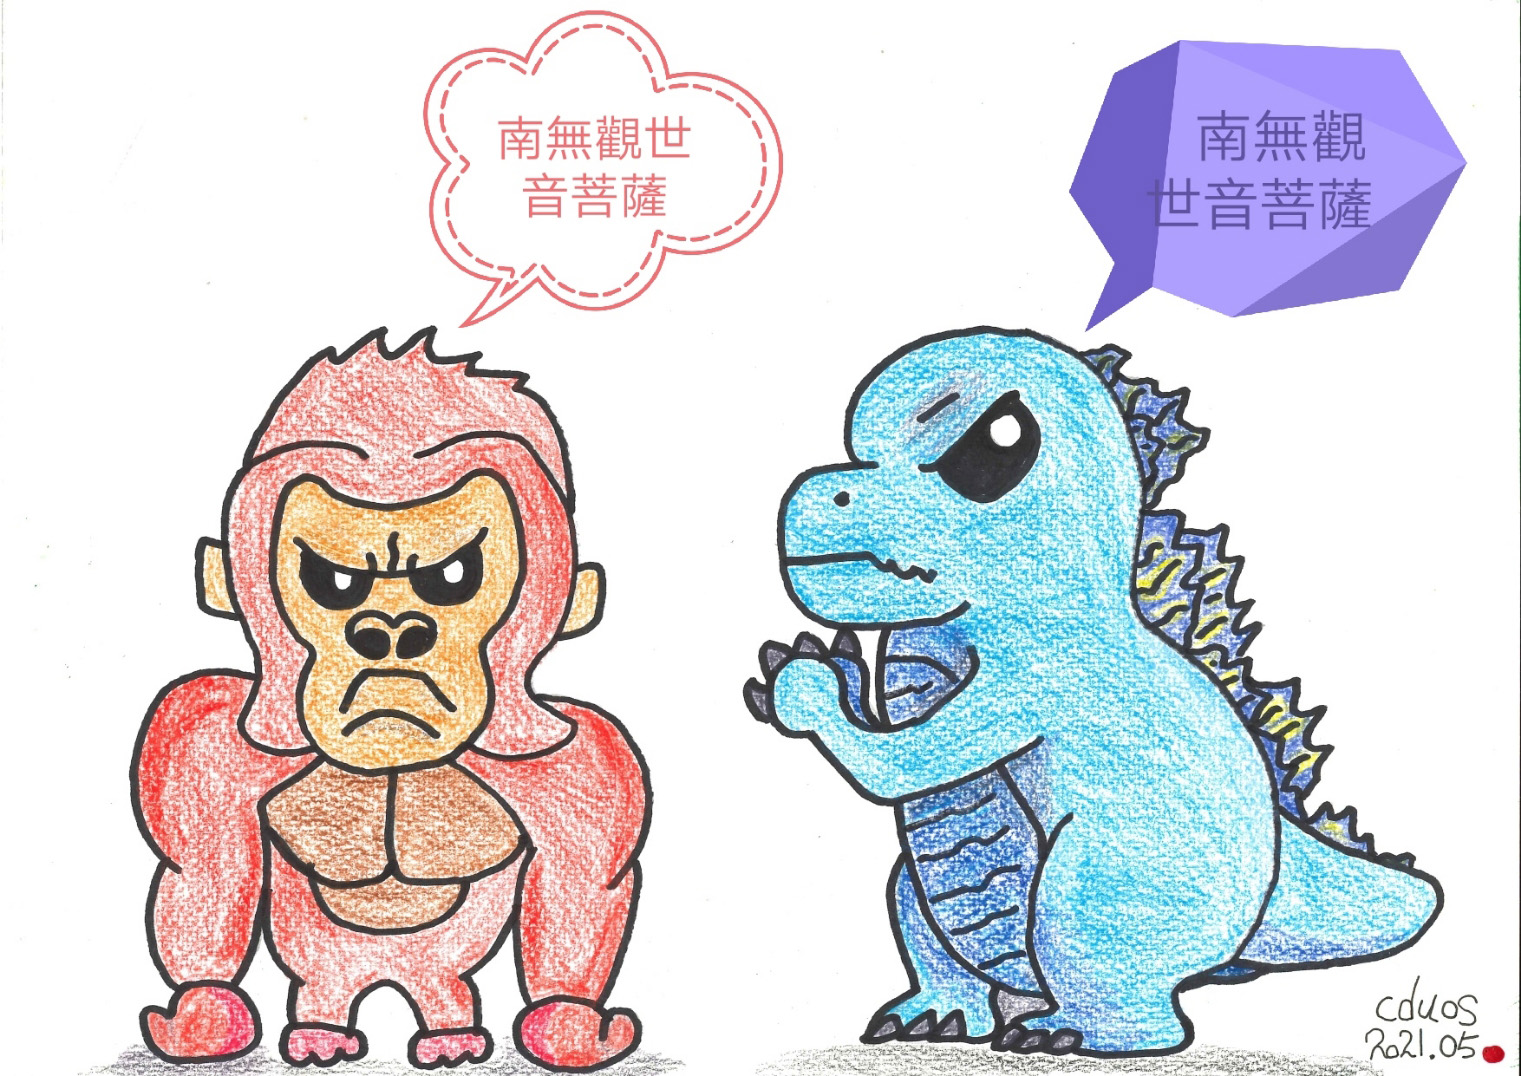 「金剛」（King Kong）和「哥吉拉（Godzilla）不打架